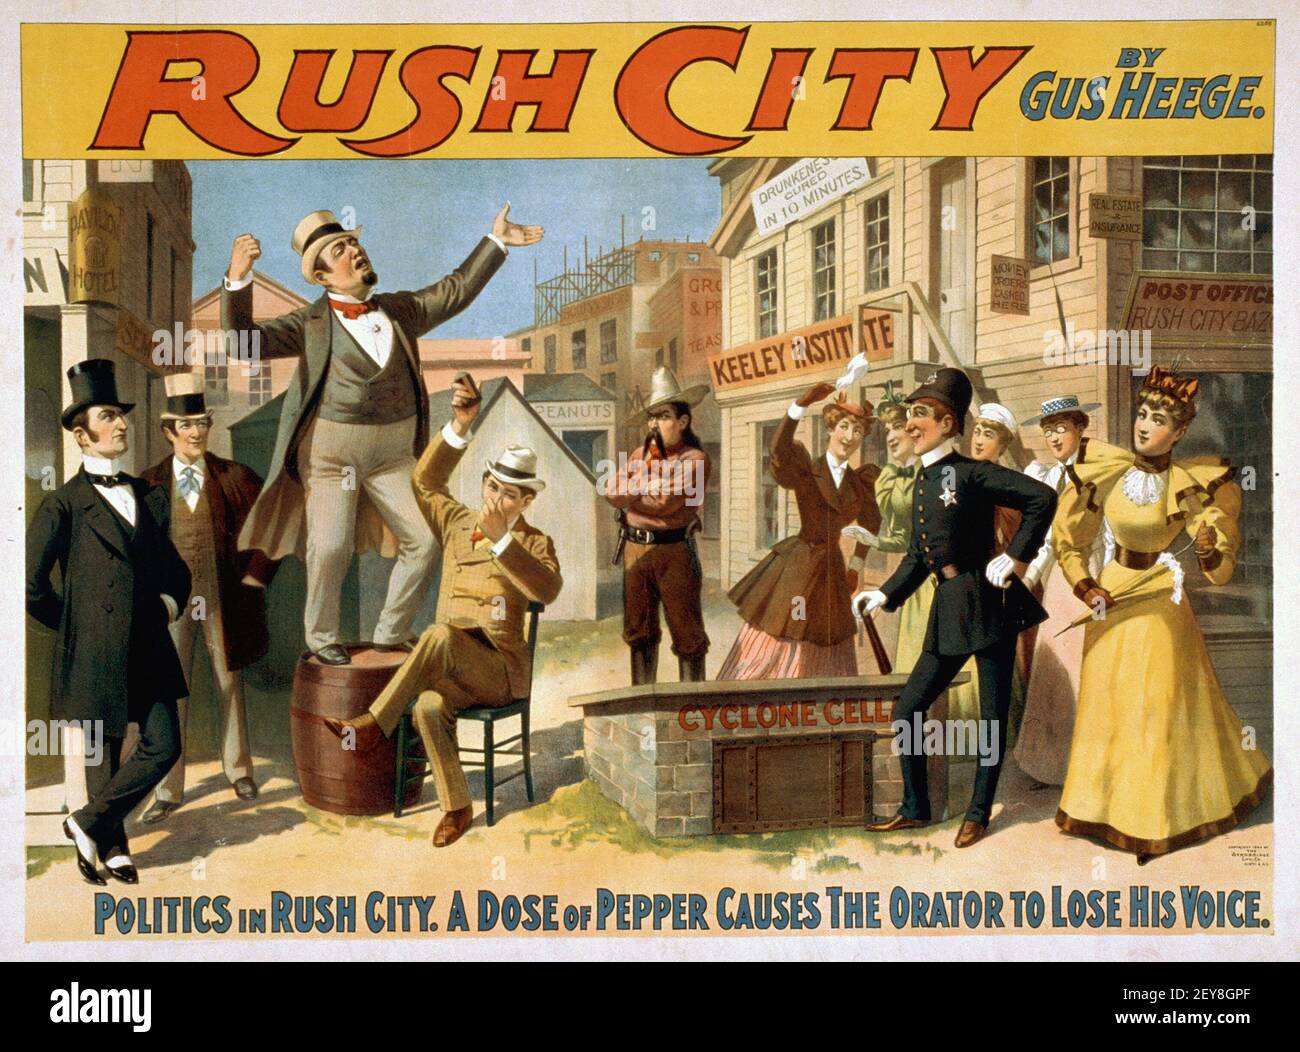 Rush City von Gus Heege. Klassisches Poster, alter und Vintage-Stil. Politik in Rush City. Ci'TS ; N.Y. : Strobridge Lith. Co., c 1894. Stockfoto